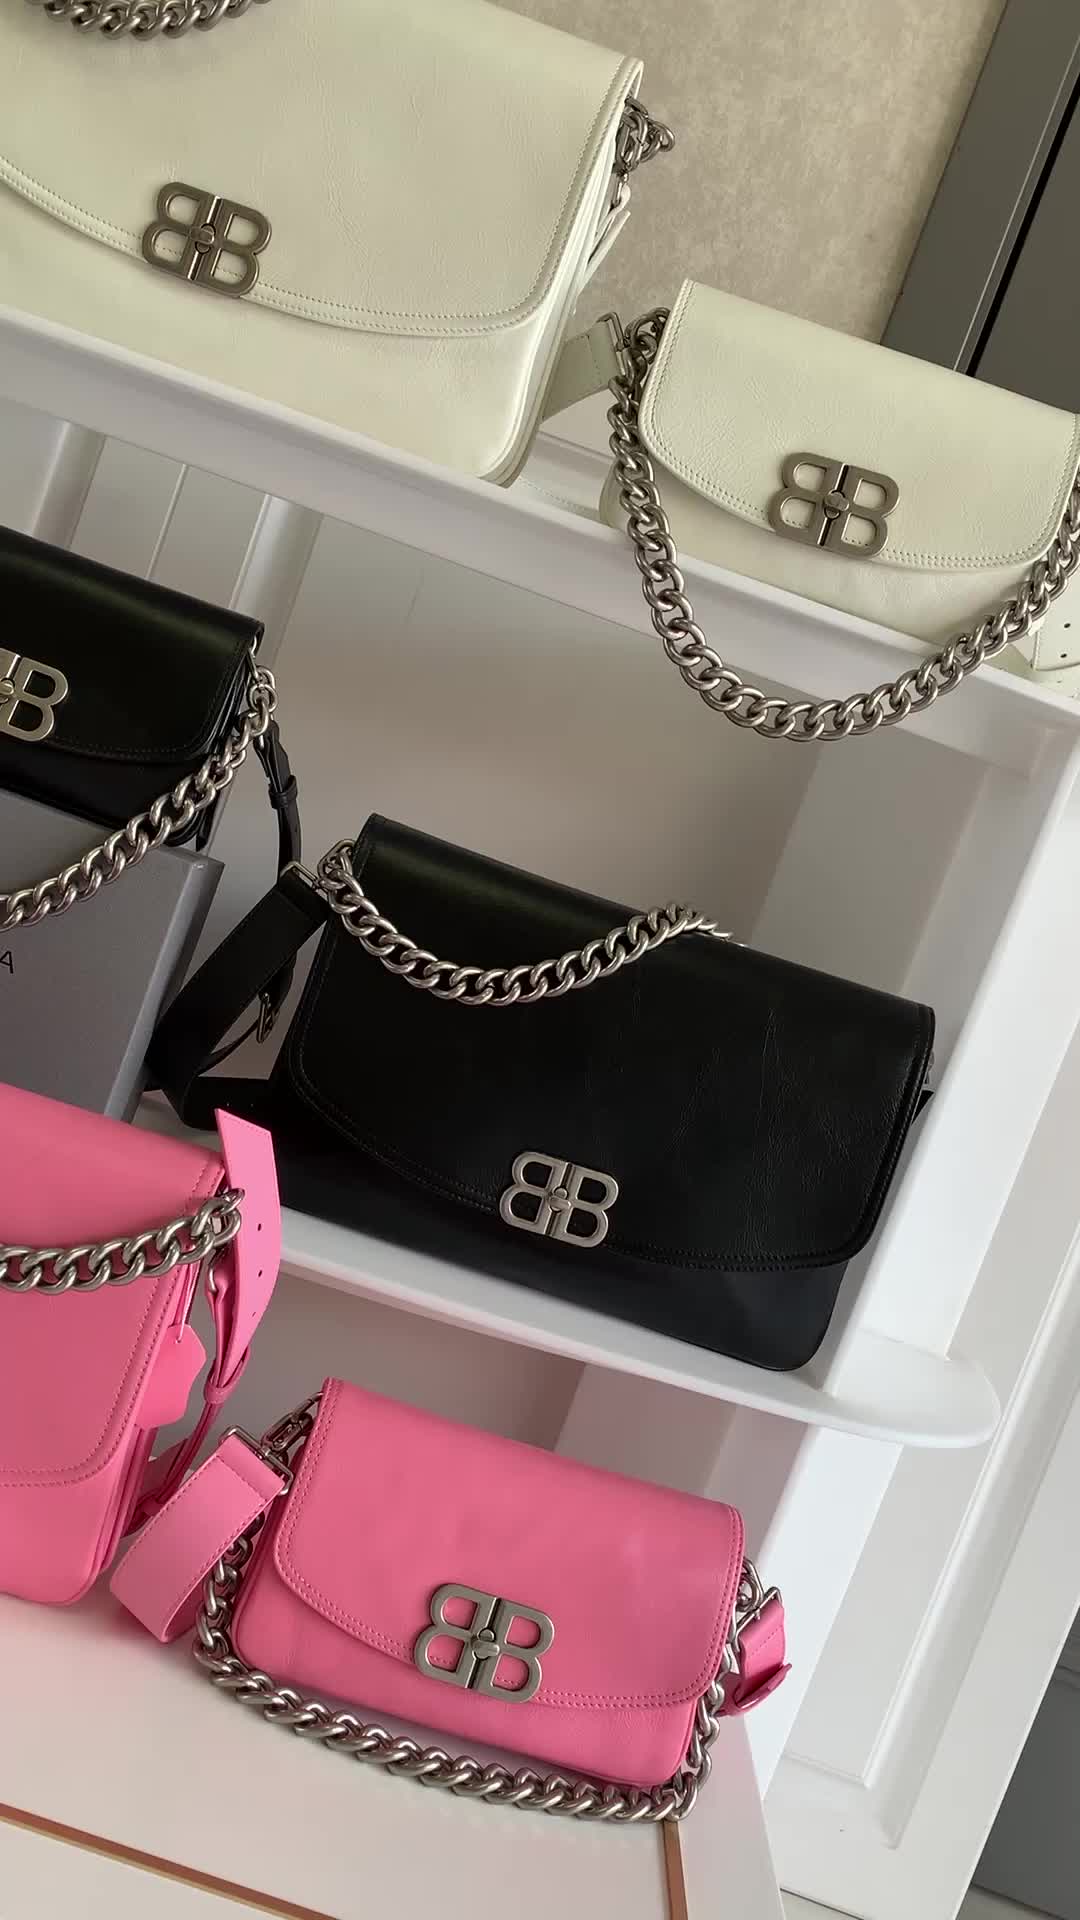 Balenciaga Bag-(4A)-Other Styles- Code: QB4891